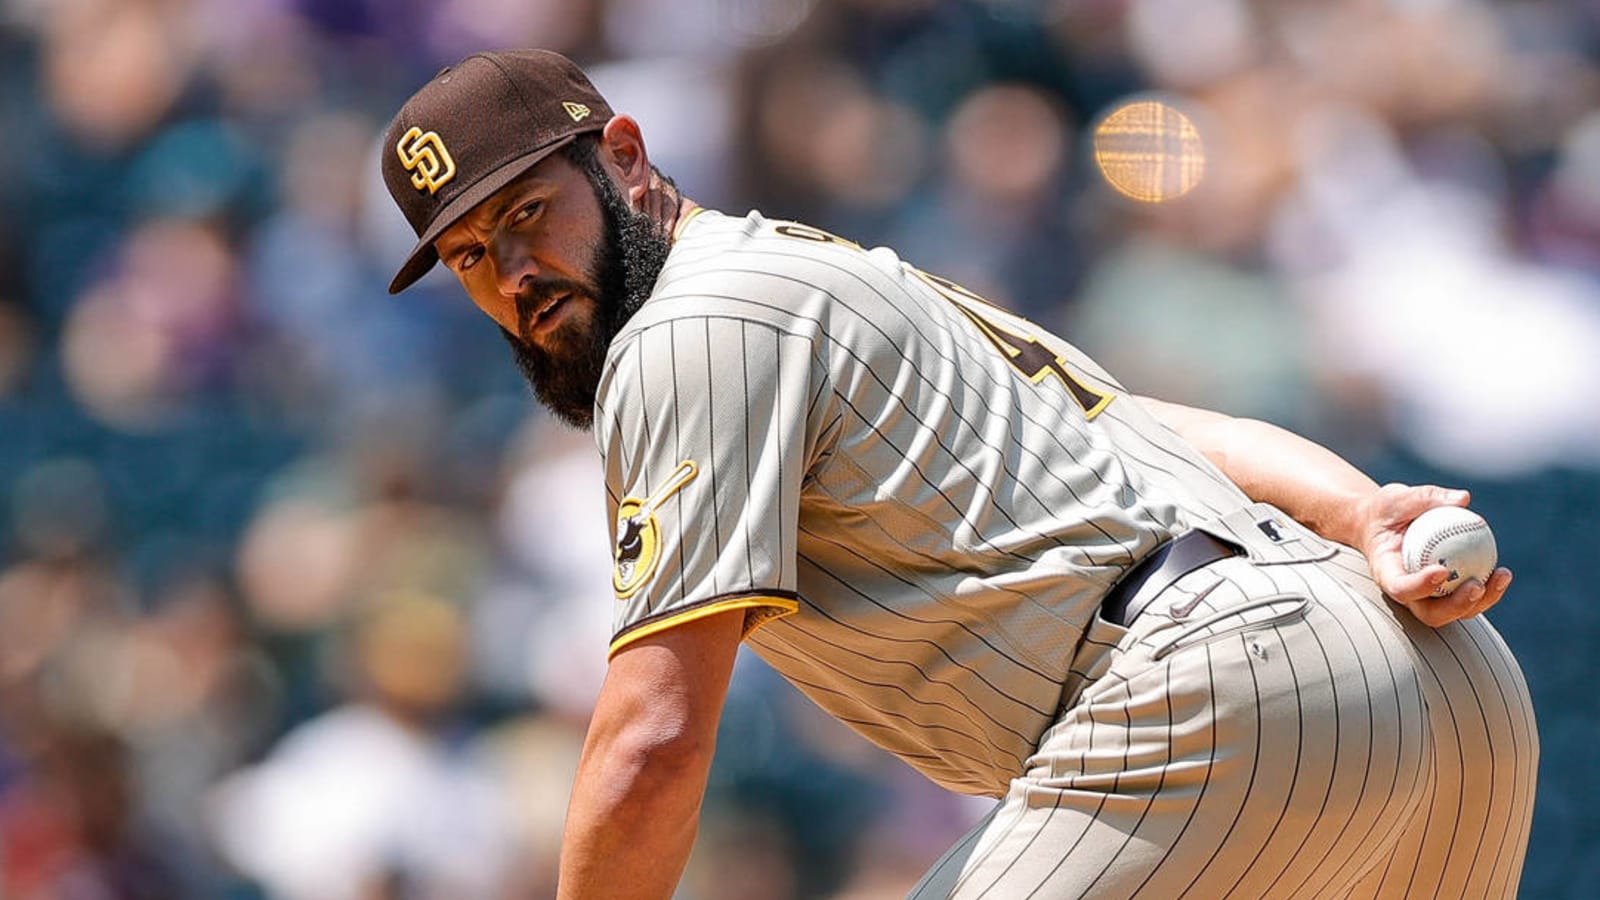 Padres place Jake Arrieta on injured list